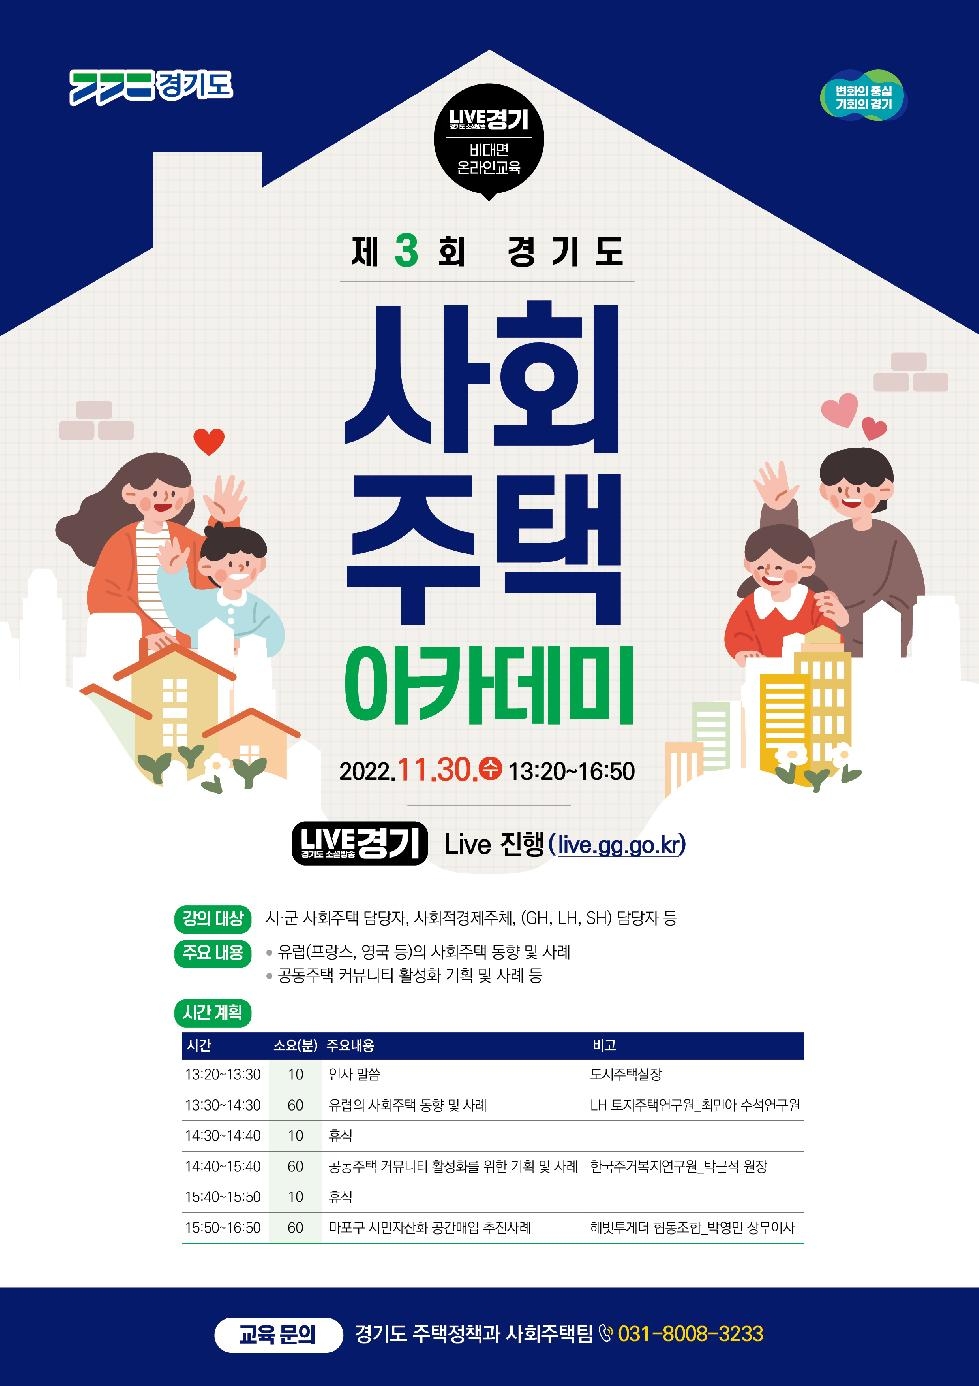 경기도,‘제3회 경기도 사회주택 아카데미’ 30일 개최. 커뮤니티 활성화와 지역자산화 추진